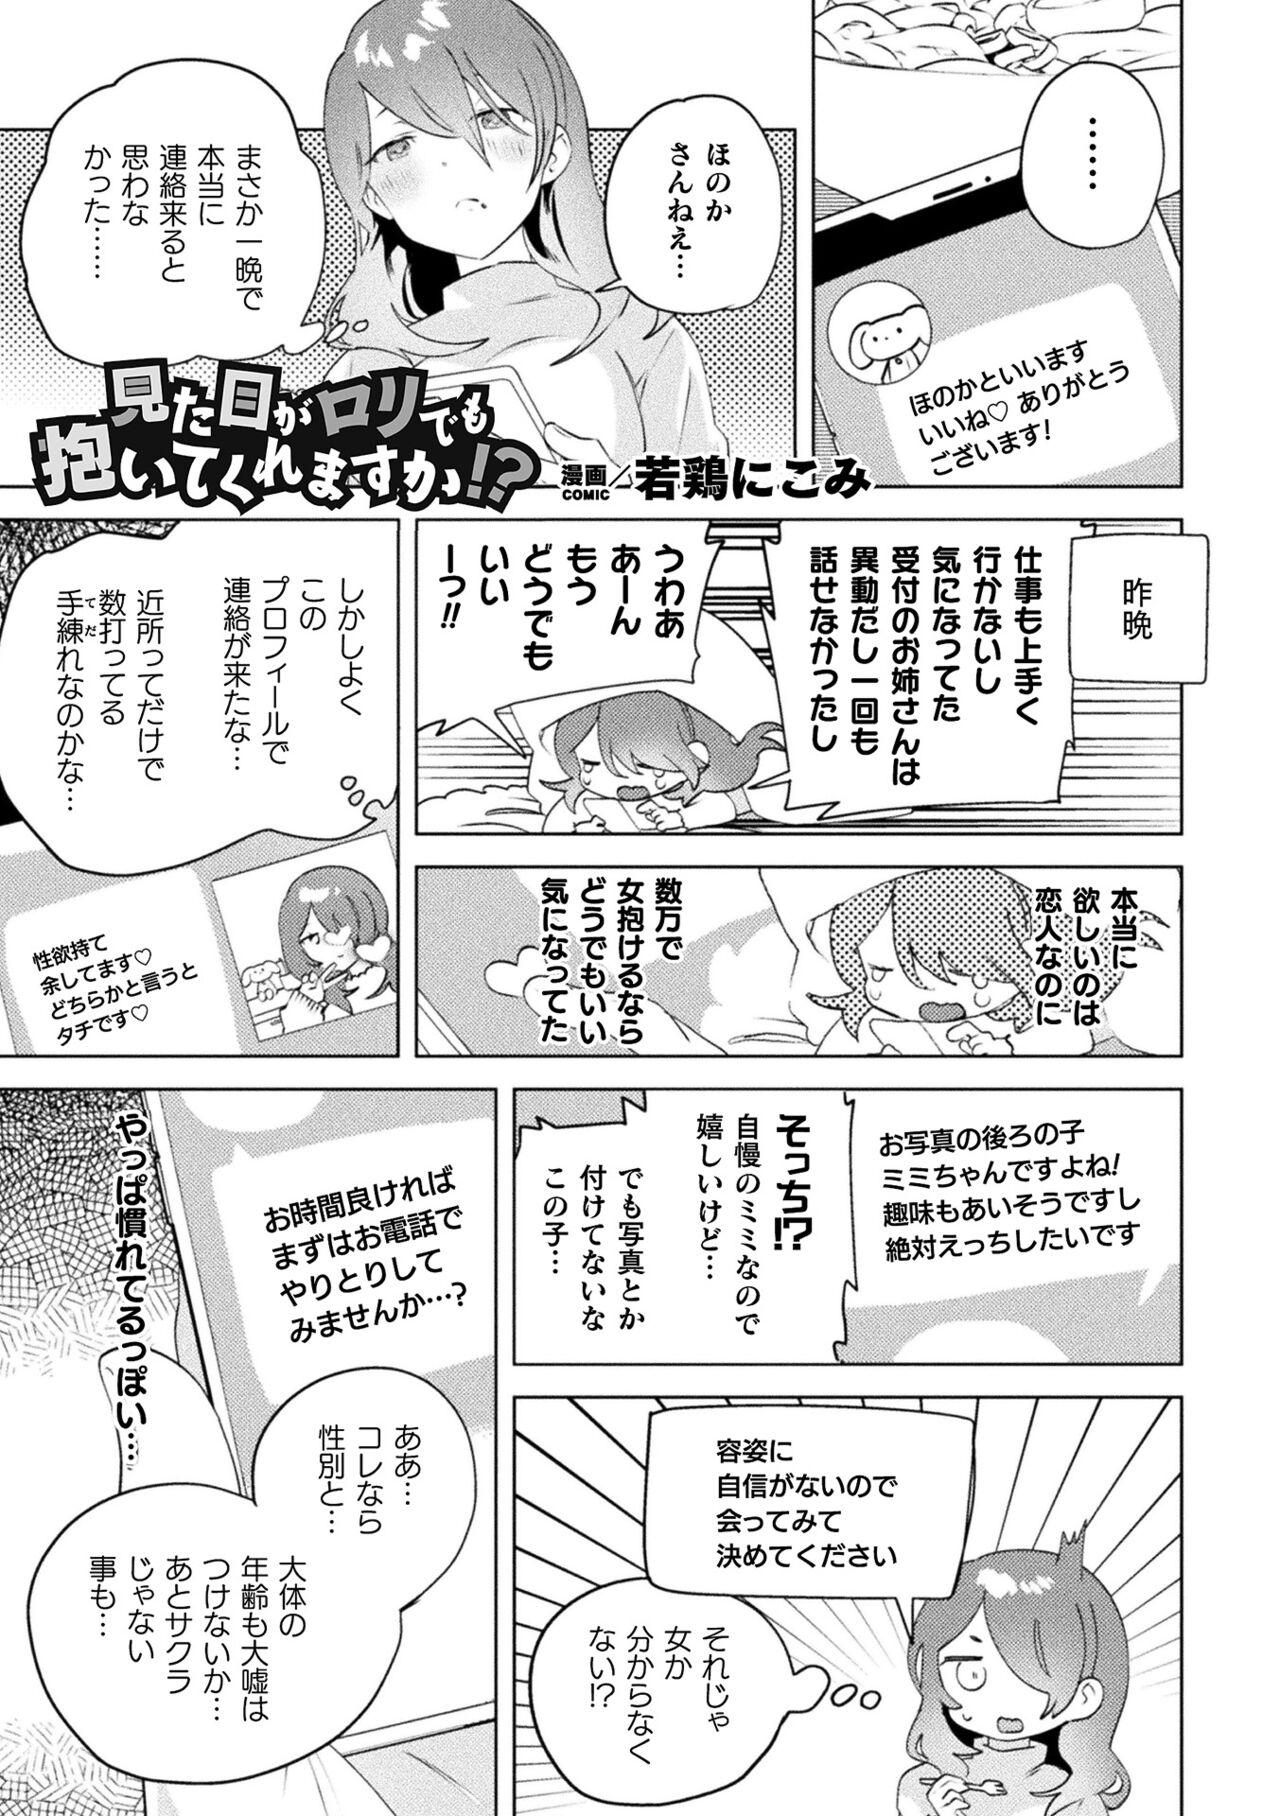 Whatsapp 2D Comic Magazine Mamakatsu Yuri Ecchi Vol. 3 Oral Sex Porn - Page 3